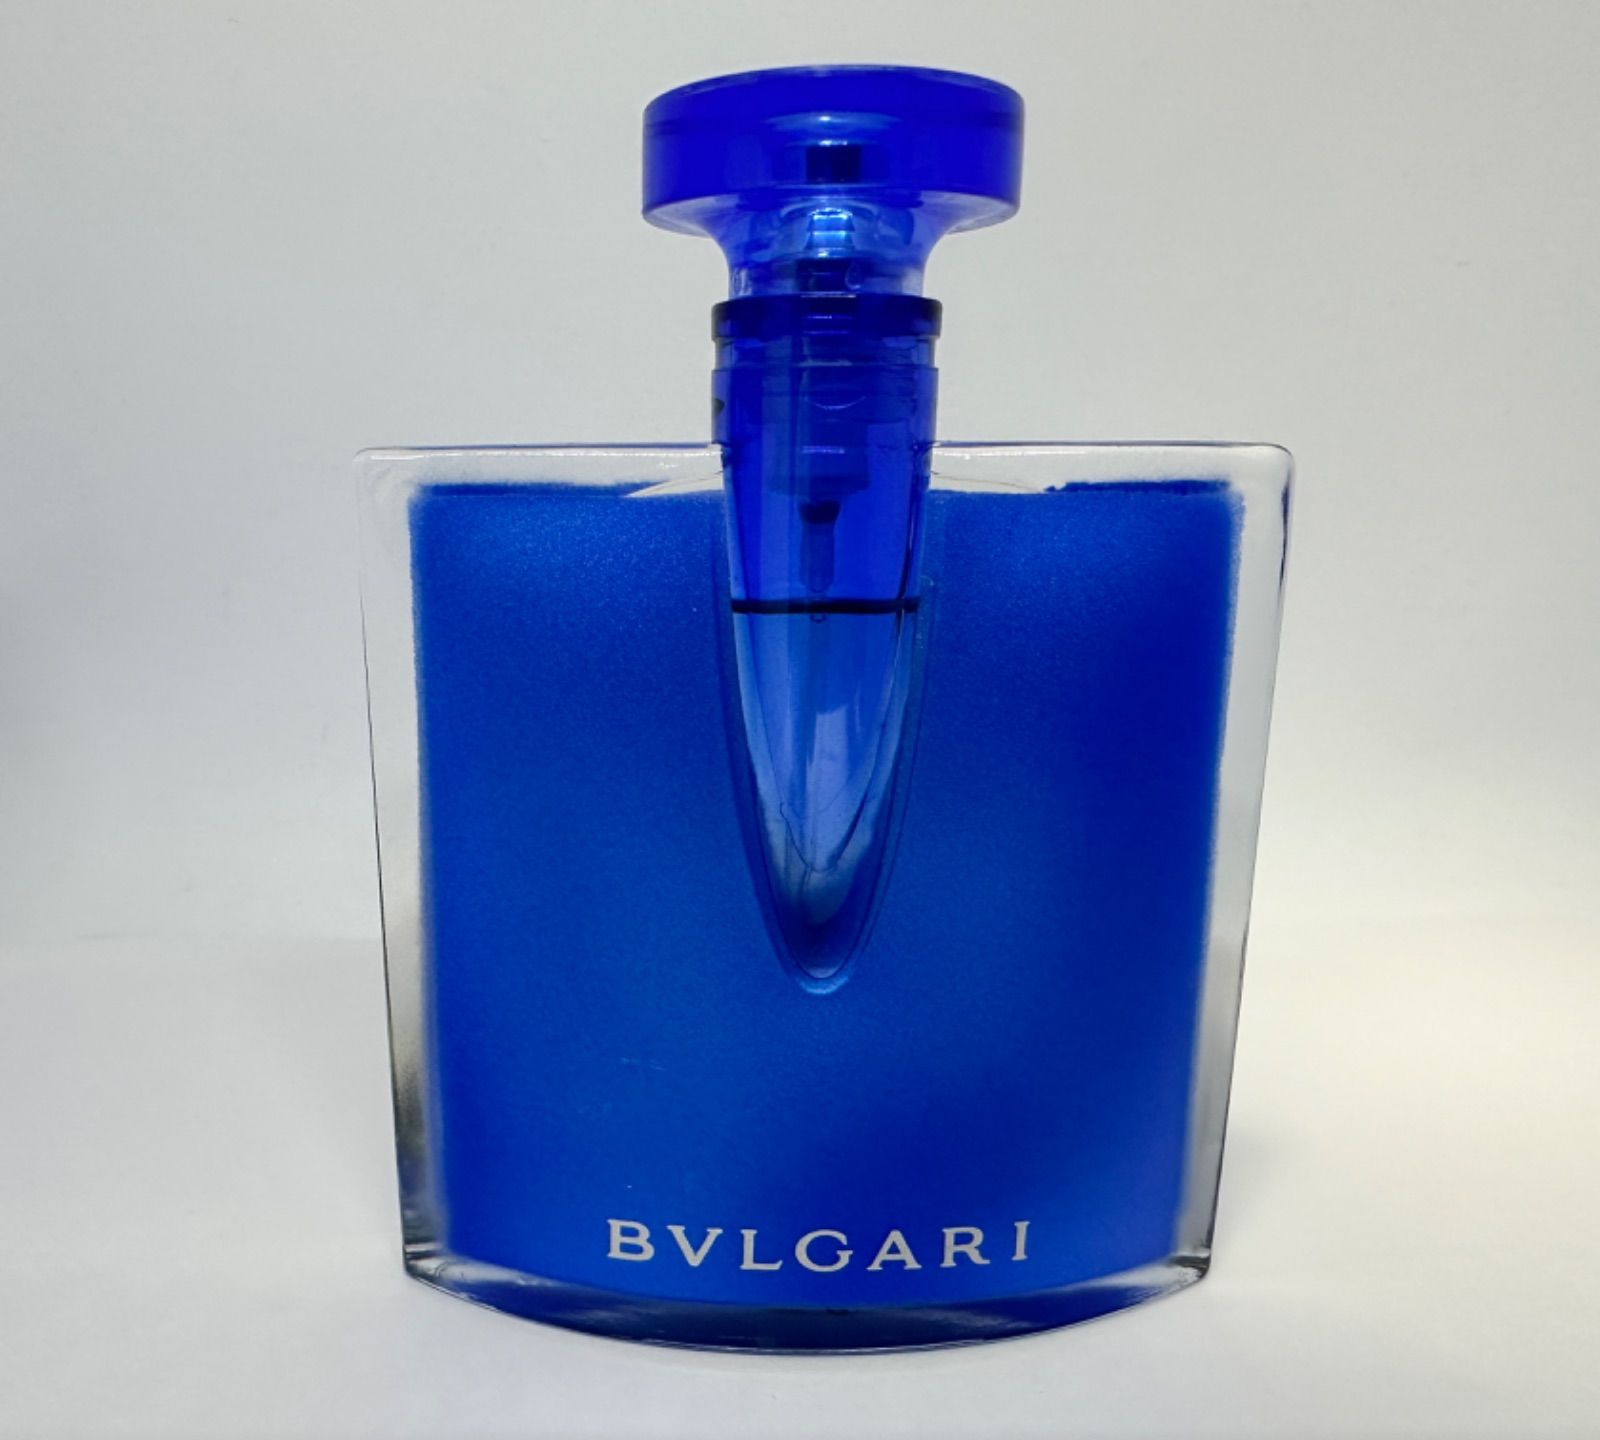 ブルガリ ブルー オードパルファム 40ml 香水 - 香水(男性用)